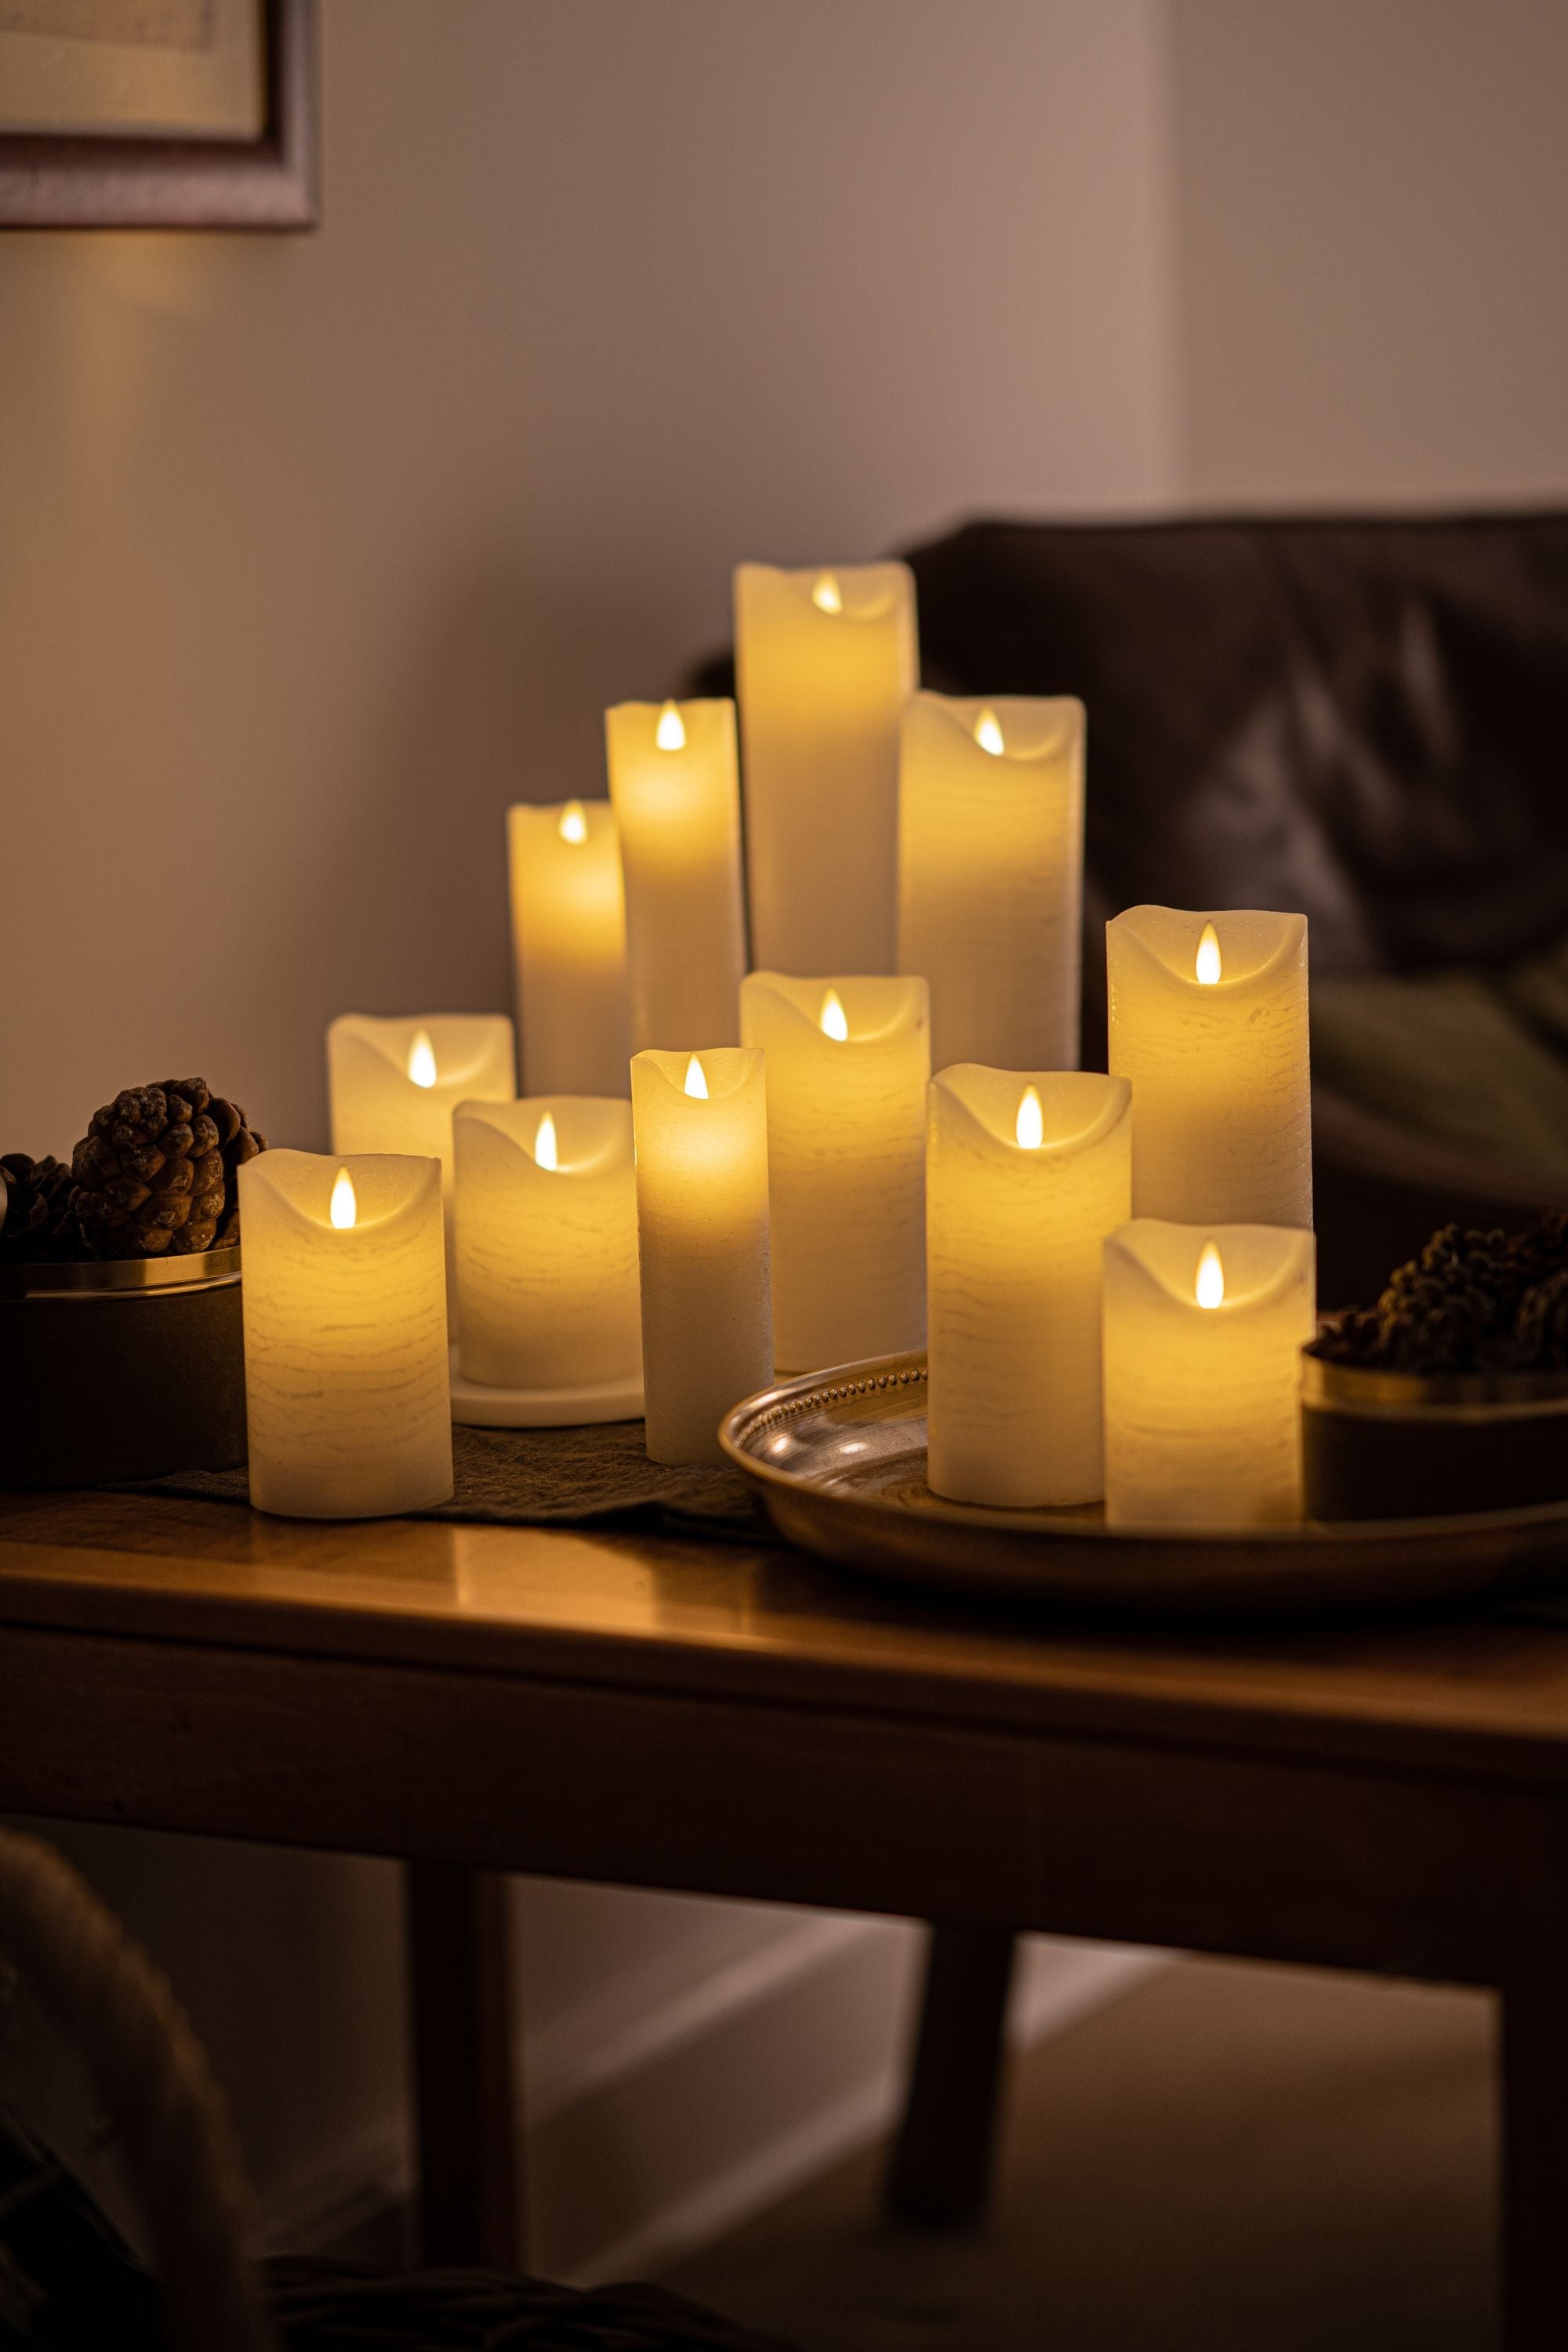 Sirius Sara wiederaufladbare LED -Kerzen weiß, Ø5x H15cm